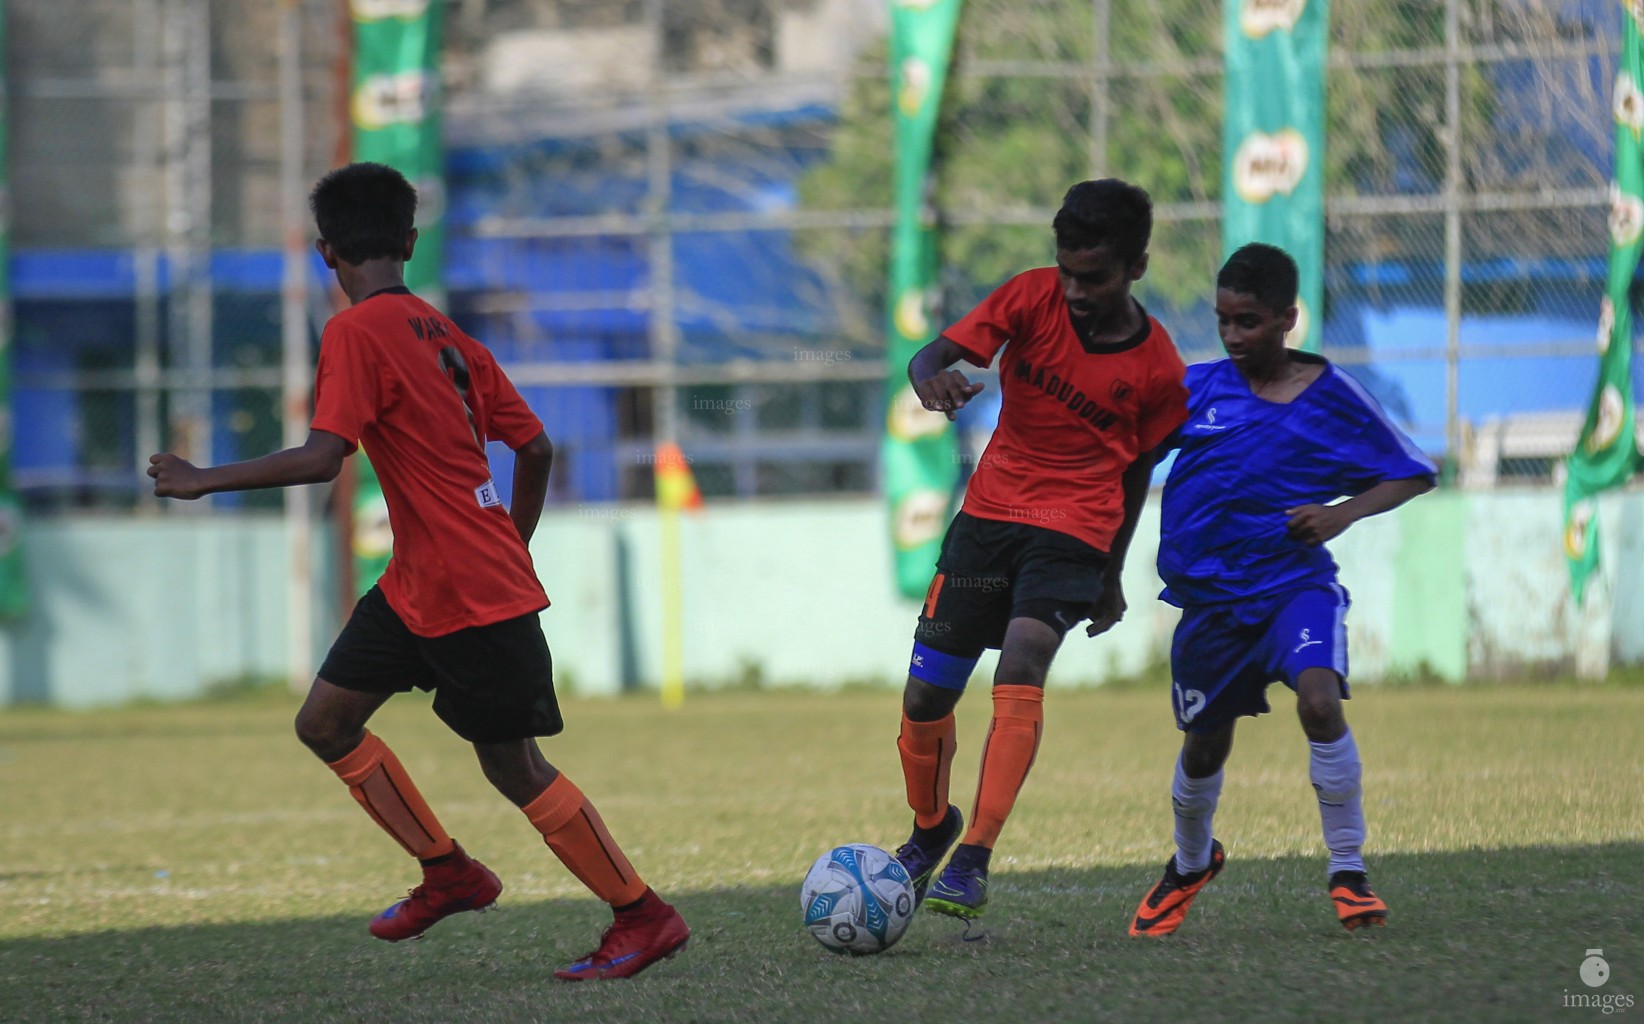 Interschool Football U14: Jamaaludheen vs Imaduddin , Friday, March 4, 2016. (Images.mv Photo: Mohamed Ahsan)